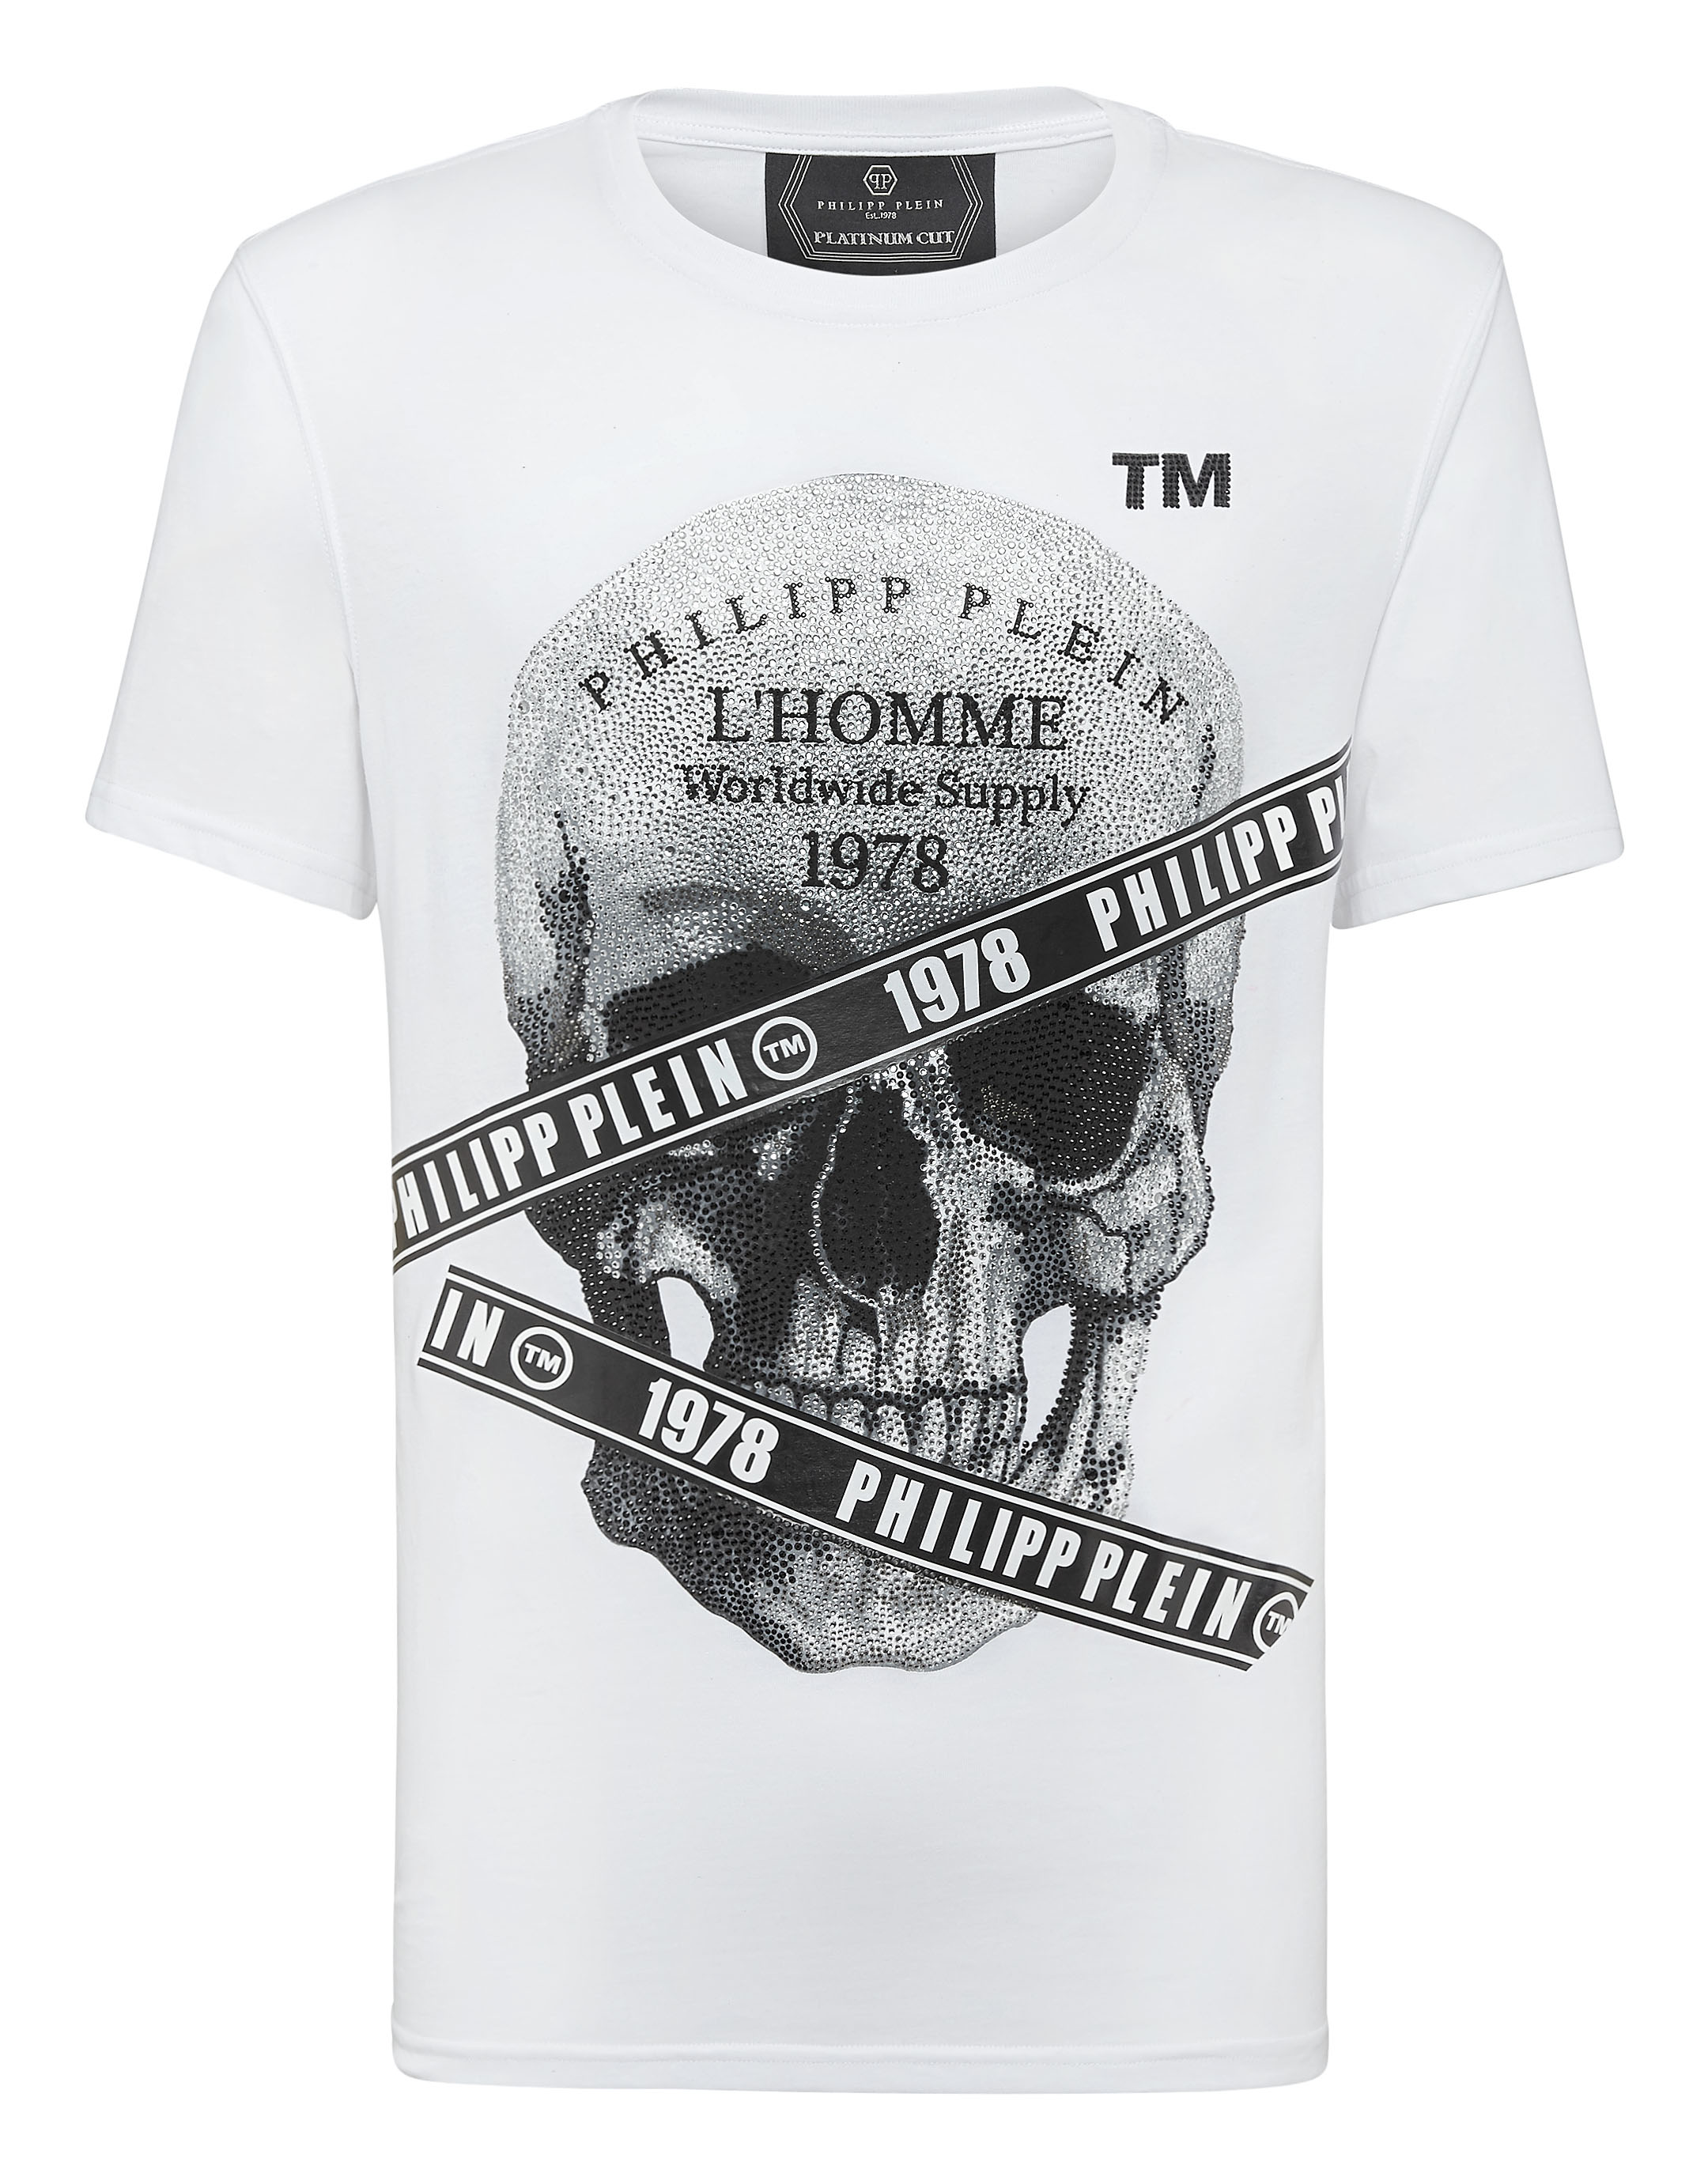 T-shirt Platinum Cut Round Neck Philipp 